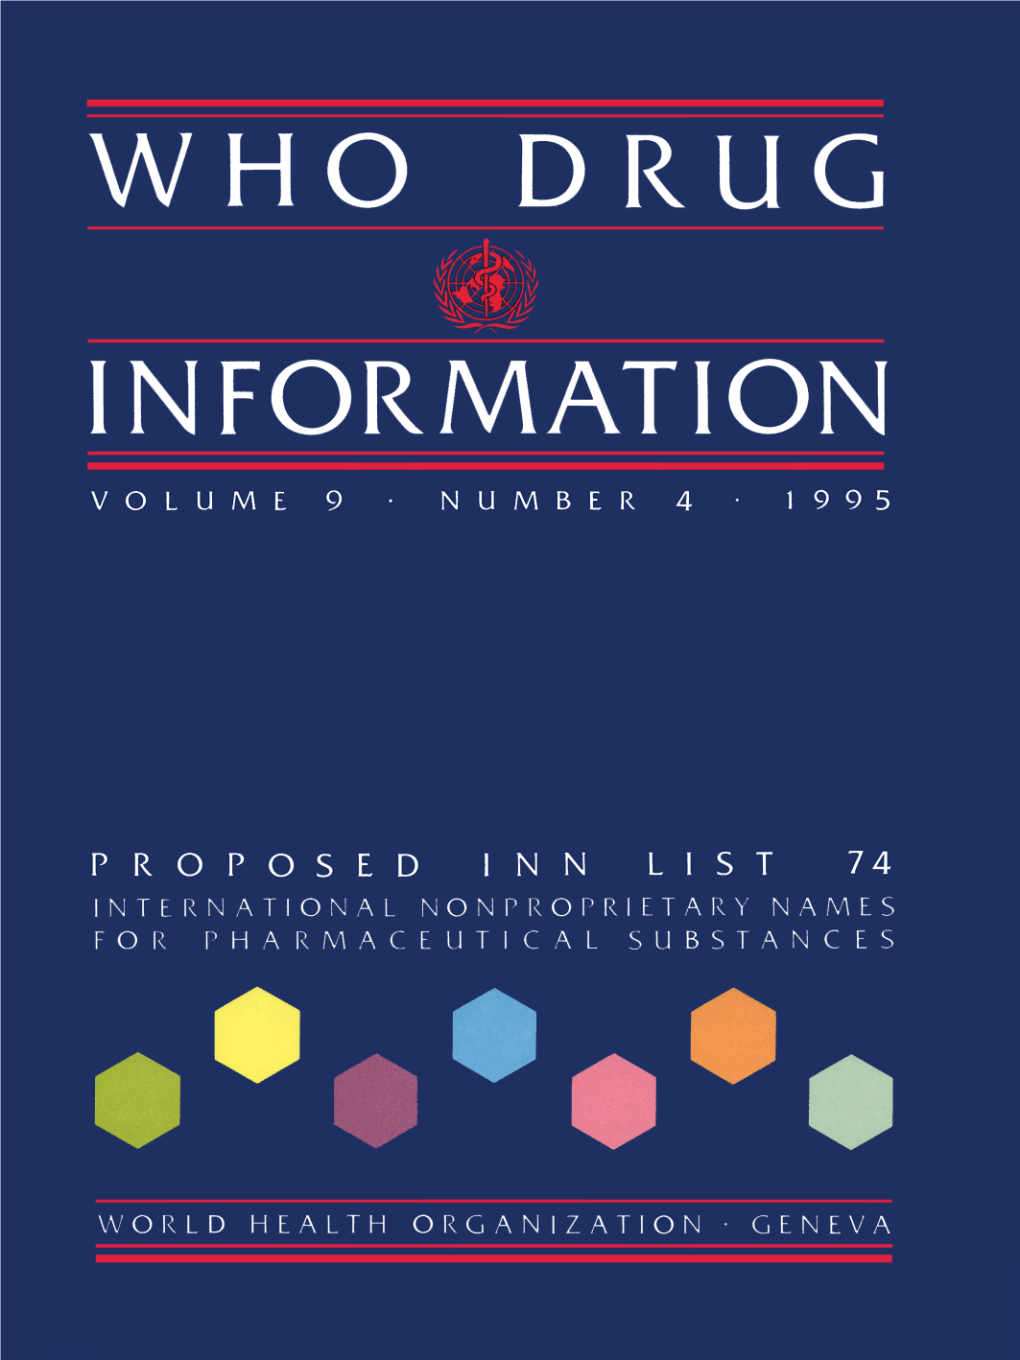 WHO Drug Information Vol. 09, No. 4, 1995